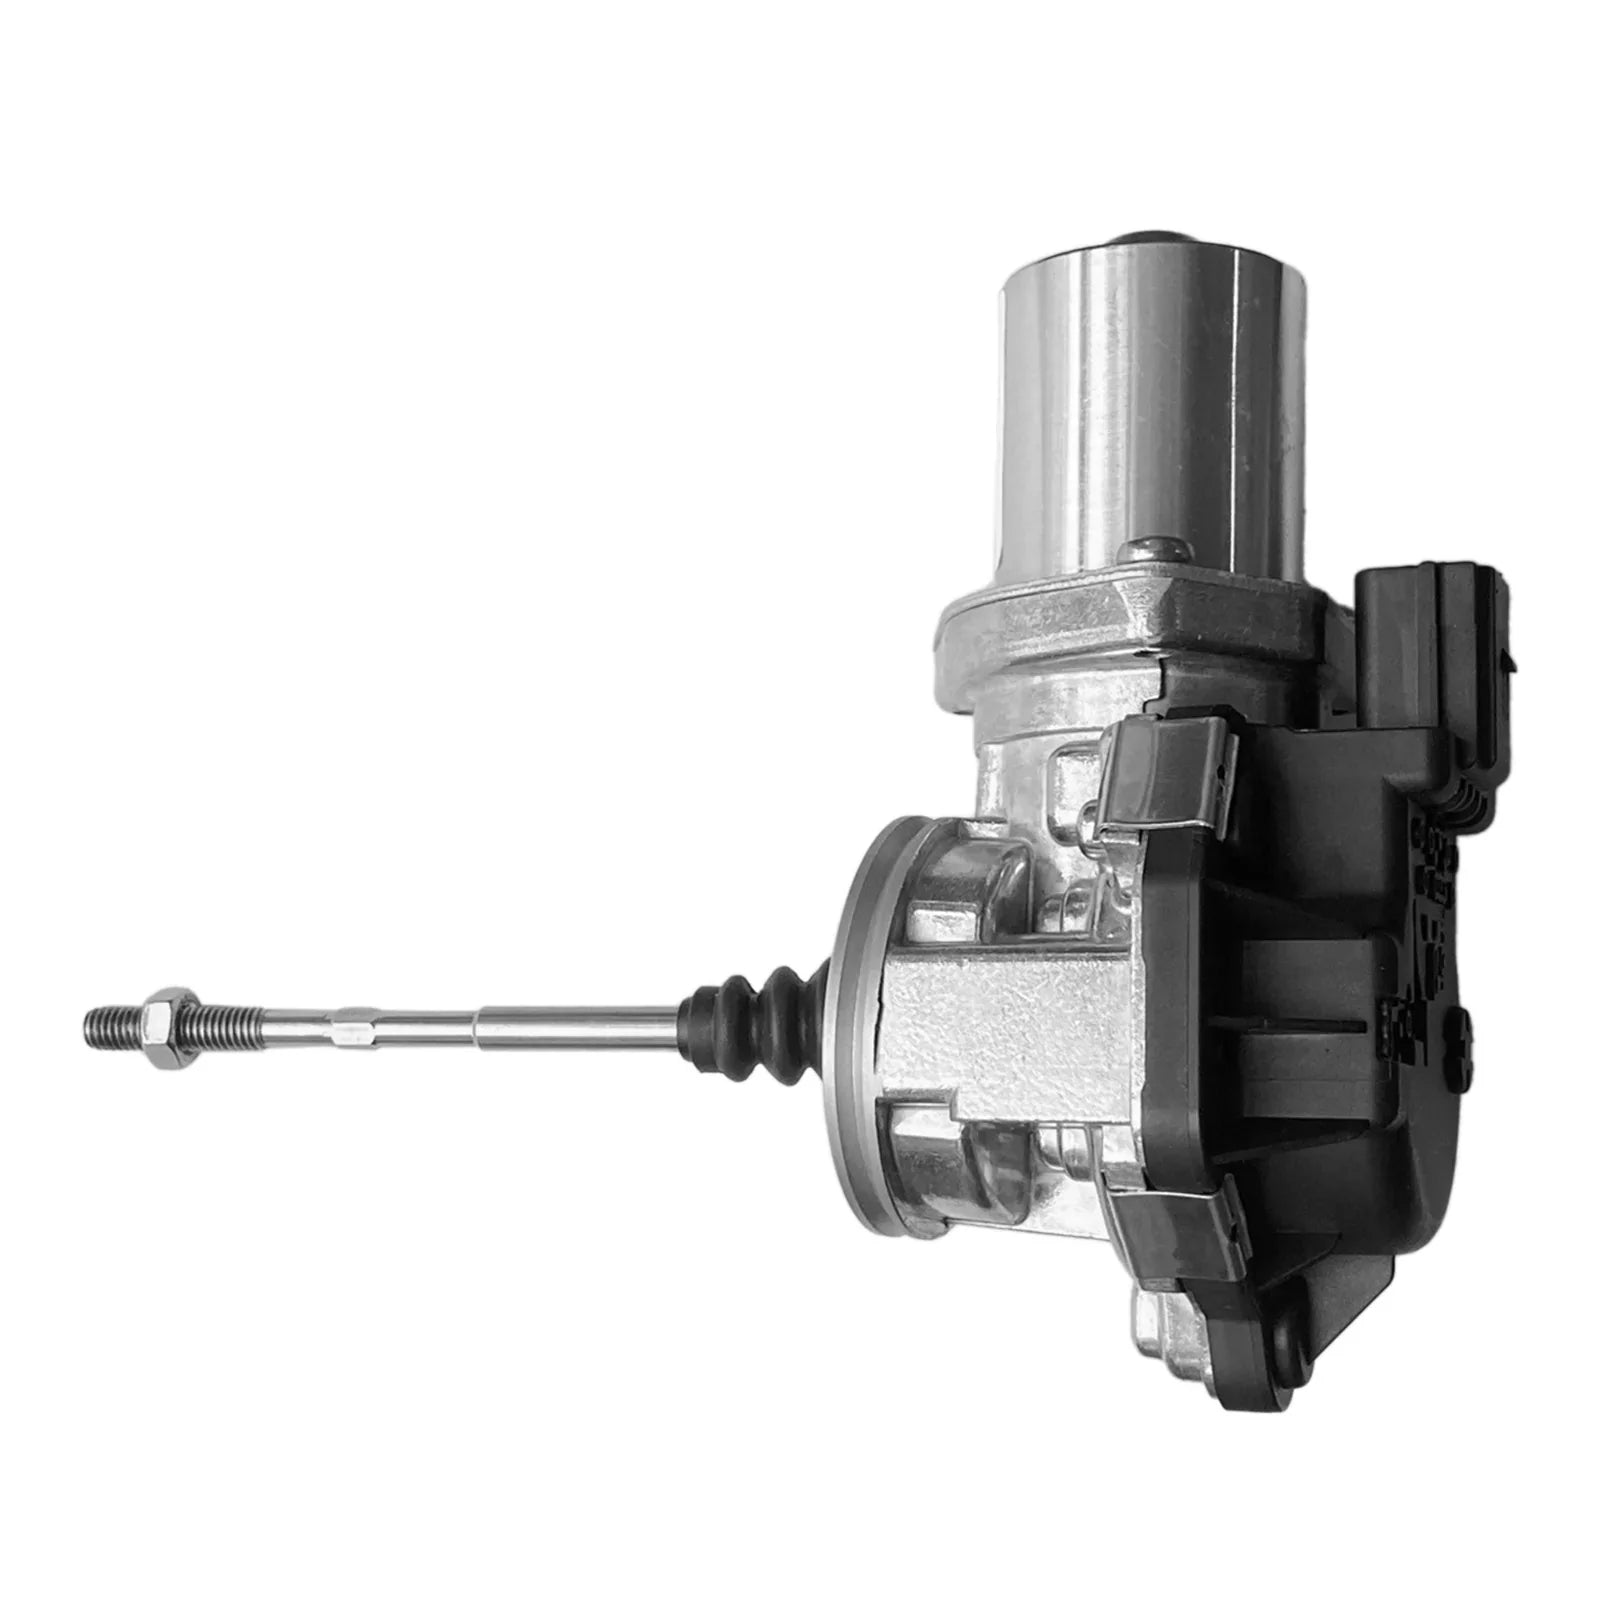 Actuador de válvula de descarga del turbocompresor 06L145614B para Audi A5 Coupe 2.0 A4 A6 Q7 2.0L genérico